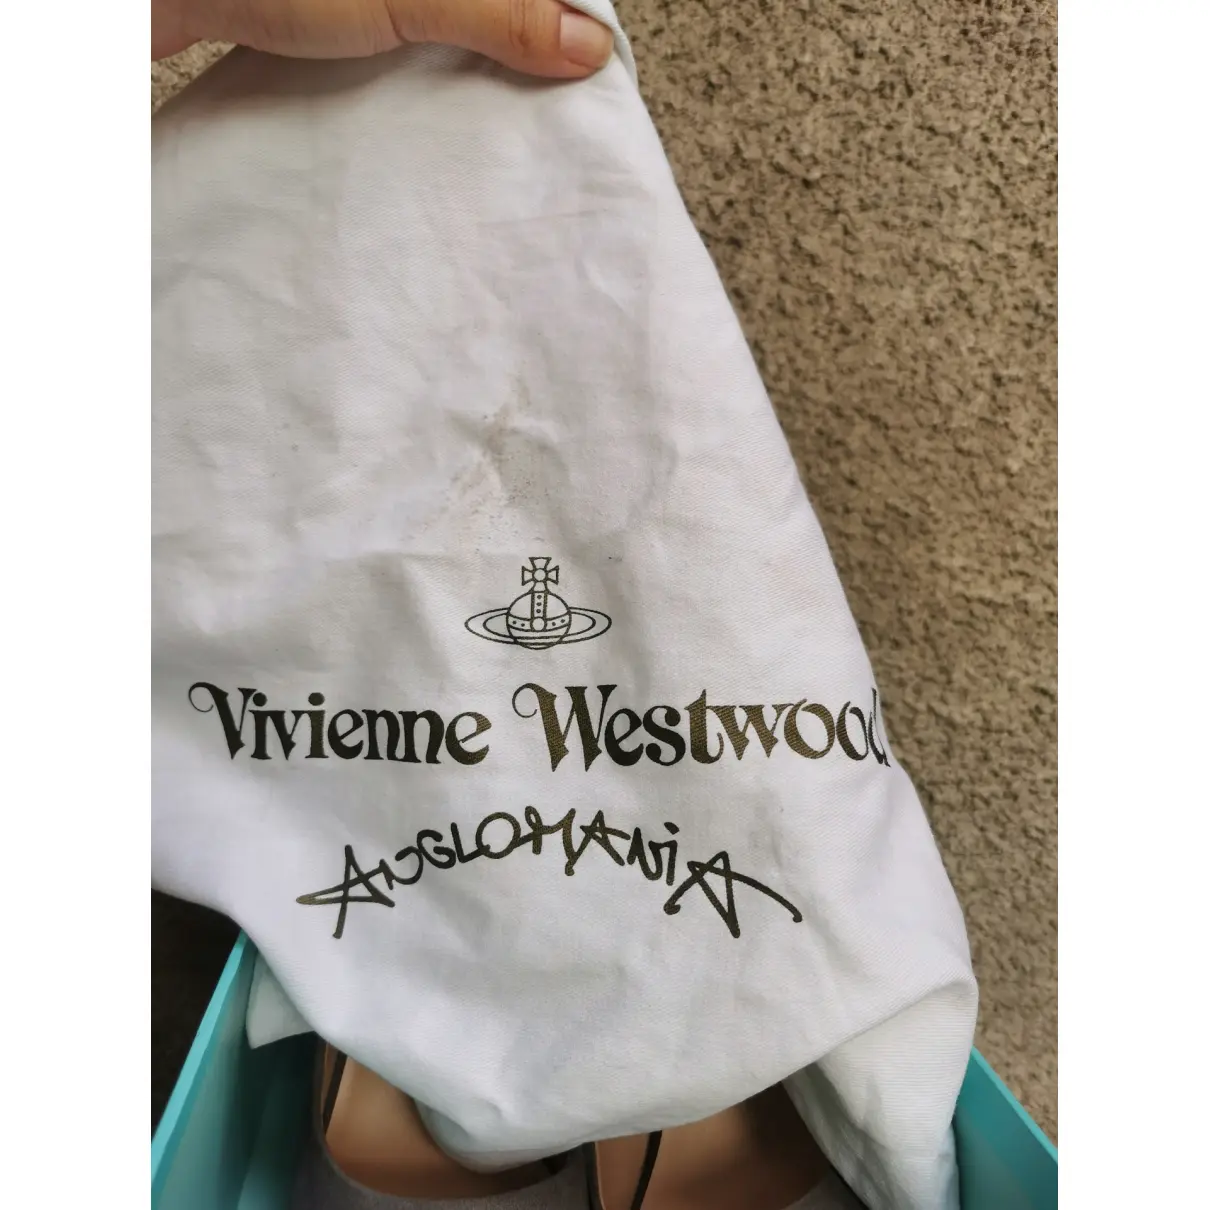 Buy Vivienne Westwood Heels online